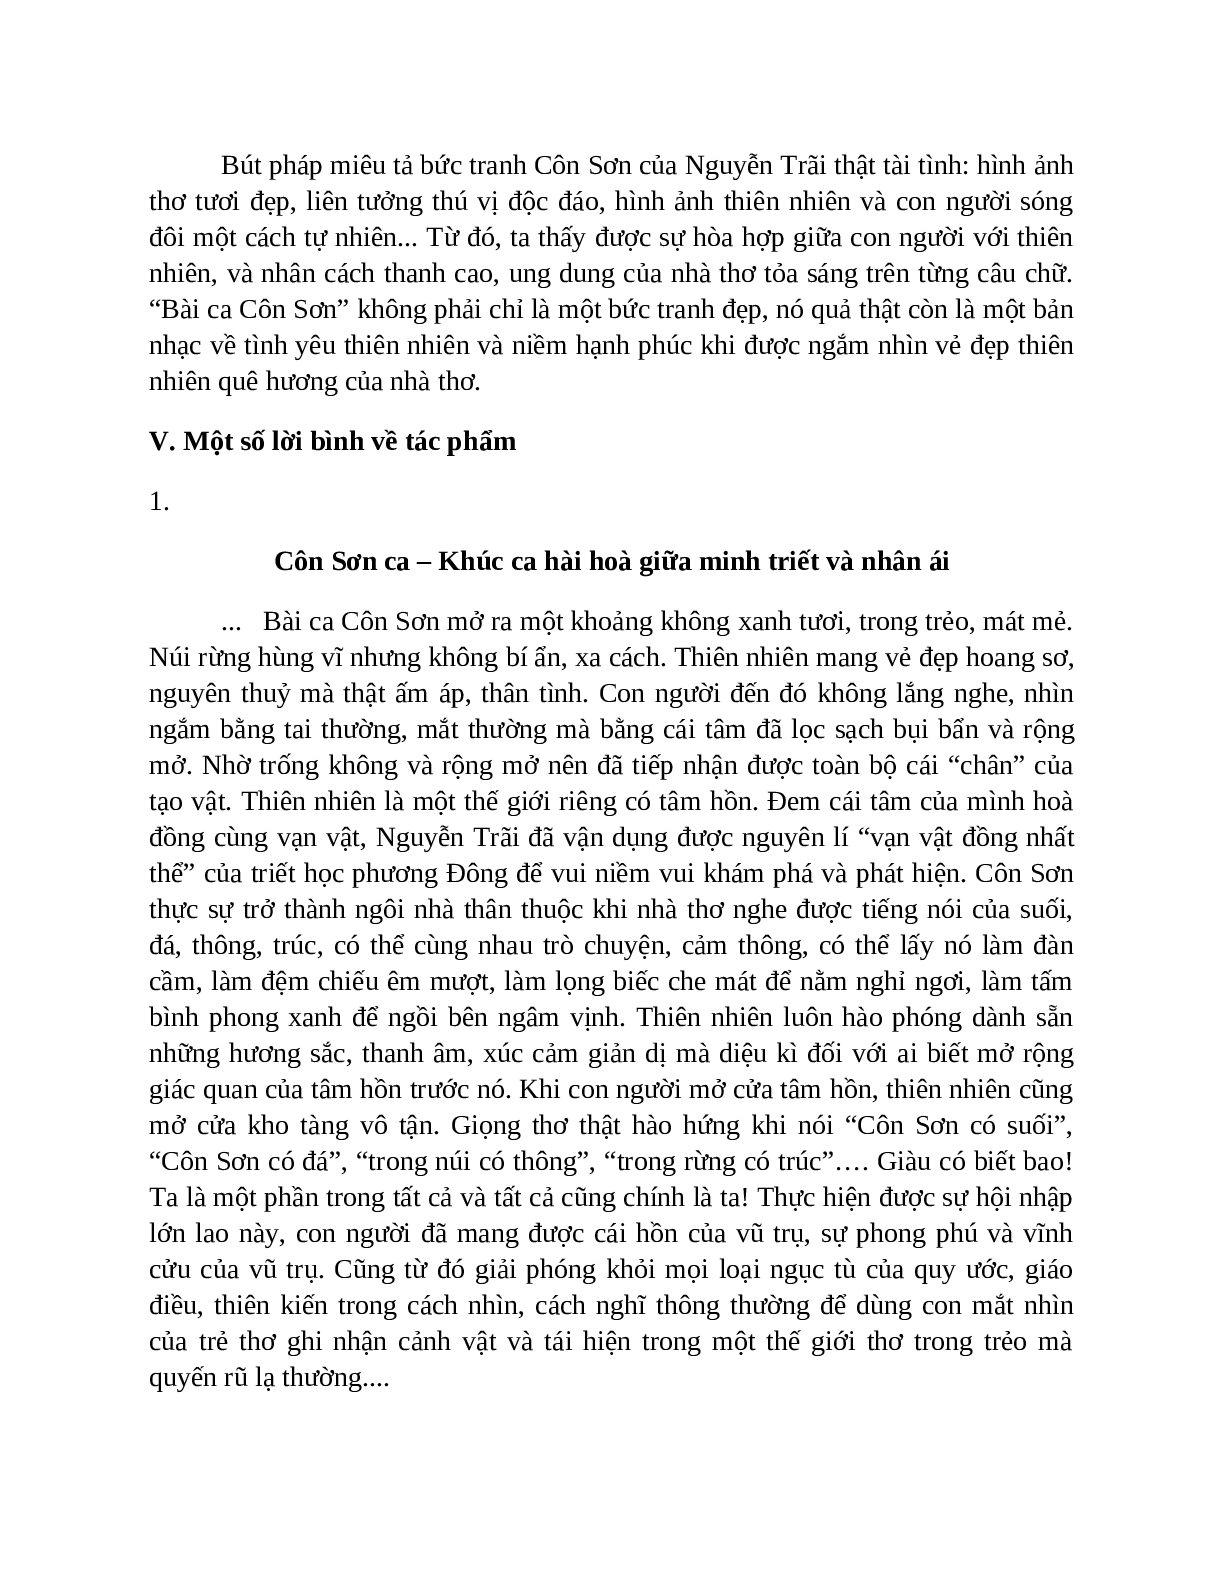 Sơ đồ tư duy bài Bài ca Côn Sơn dễ nhớ, ngắn nhất - Ngữ văn lớp 7 (trang 6)